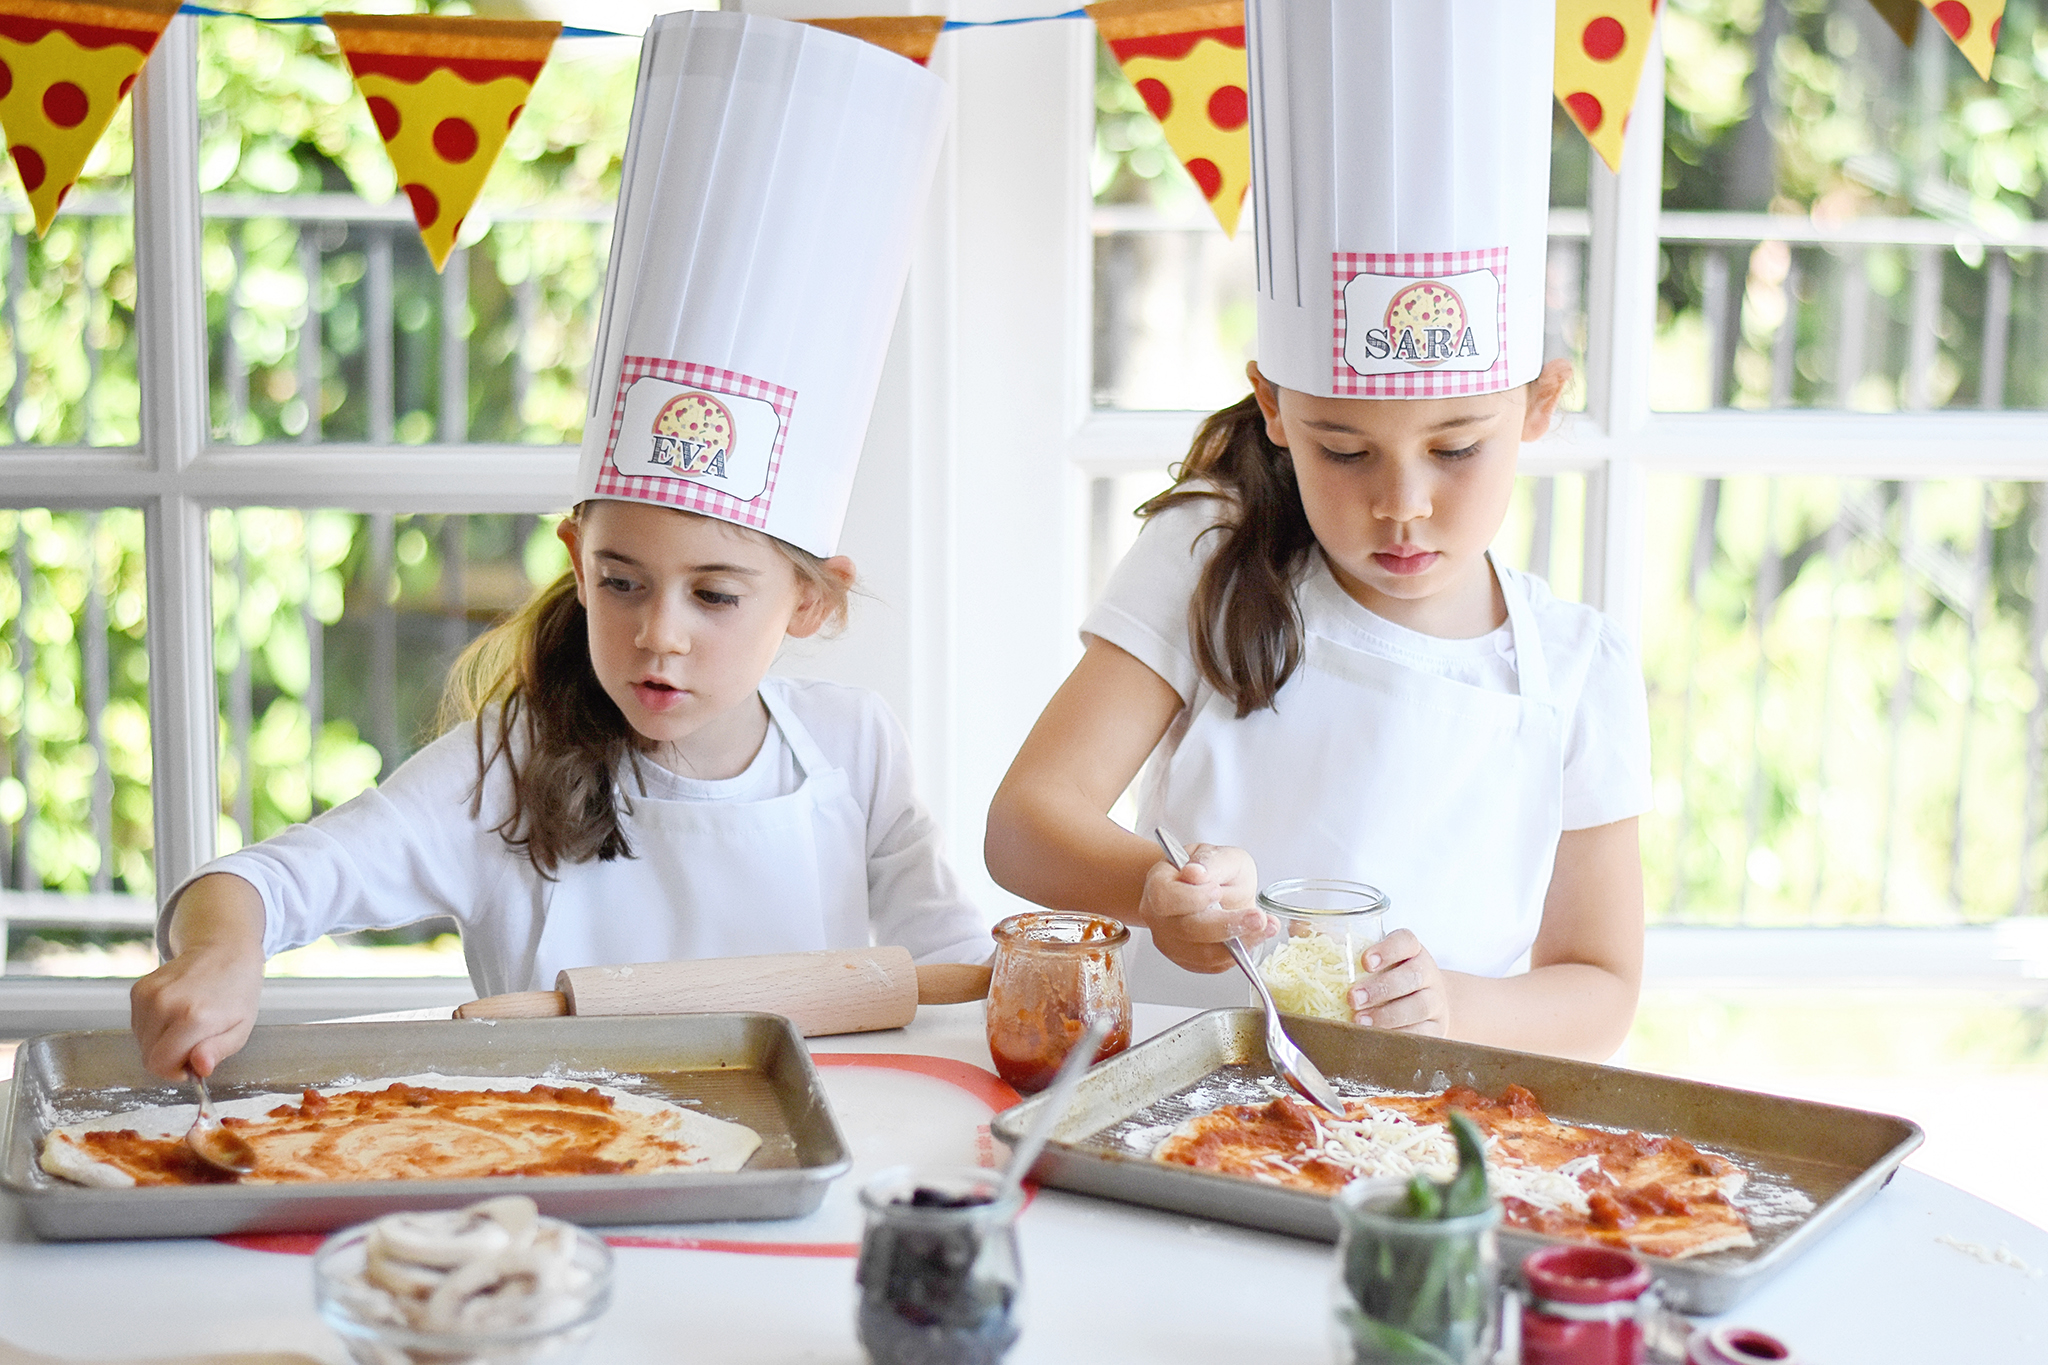 DIY Pizza Station for Kids